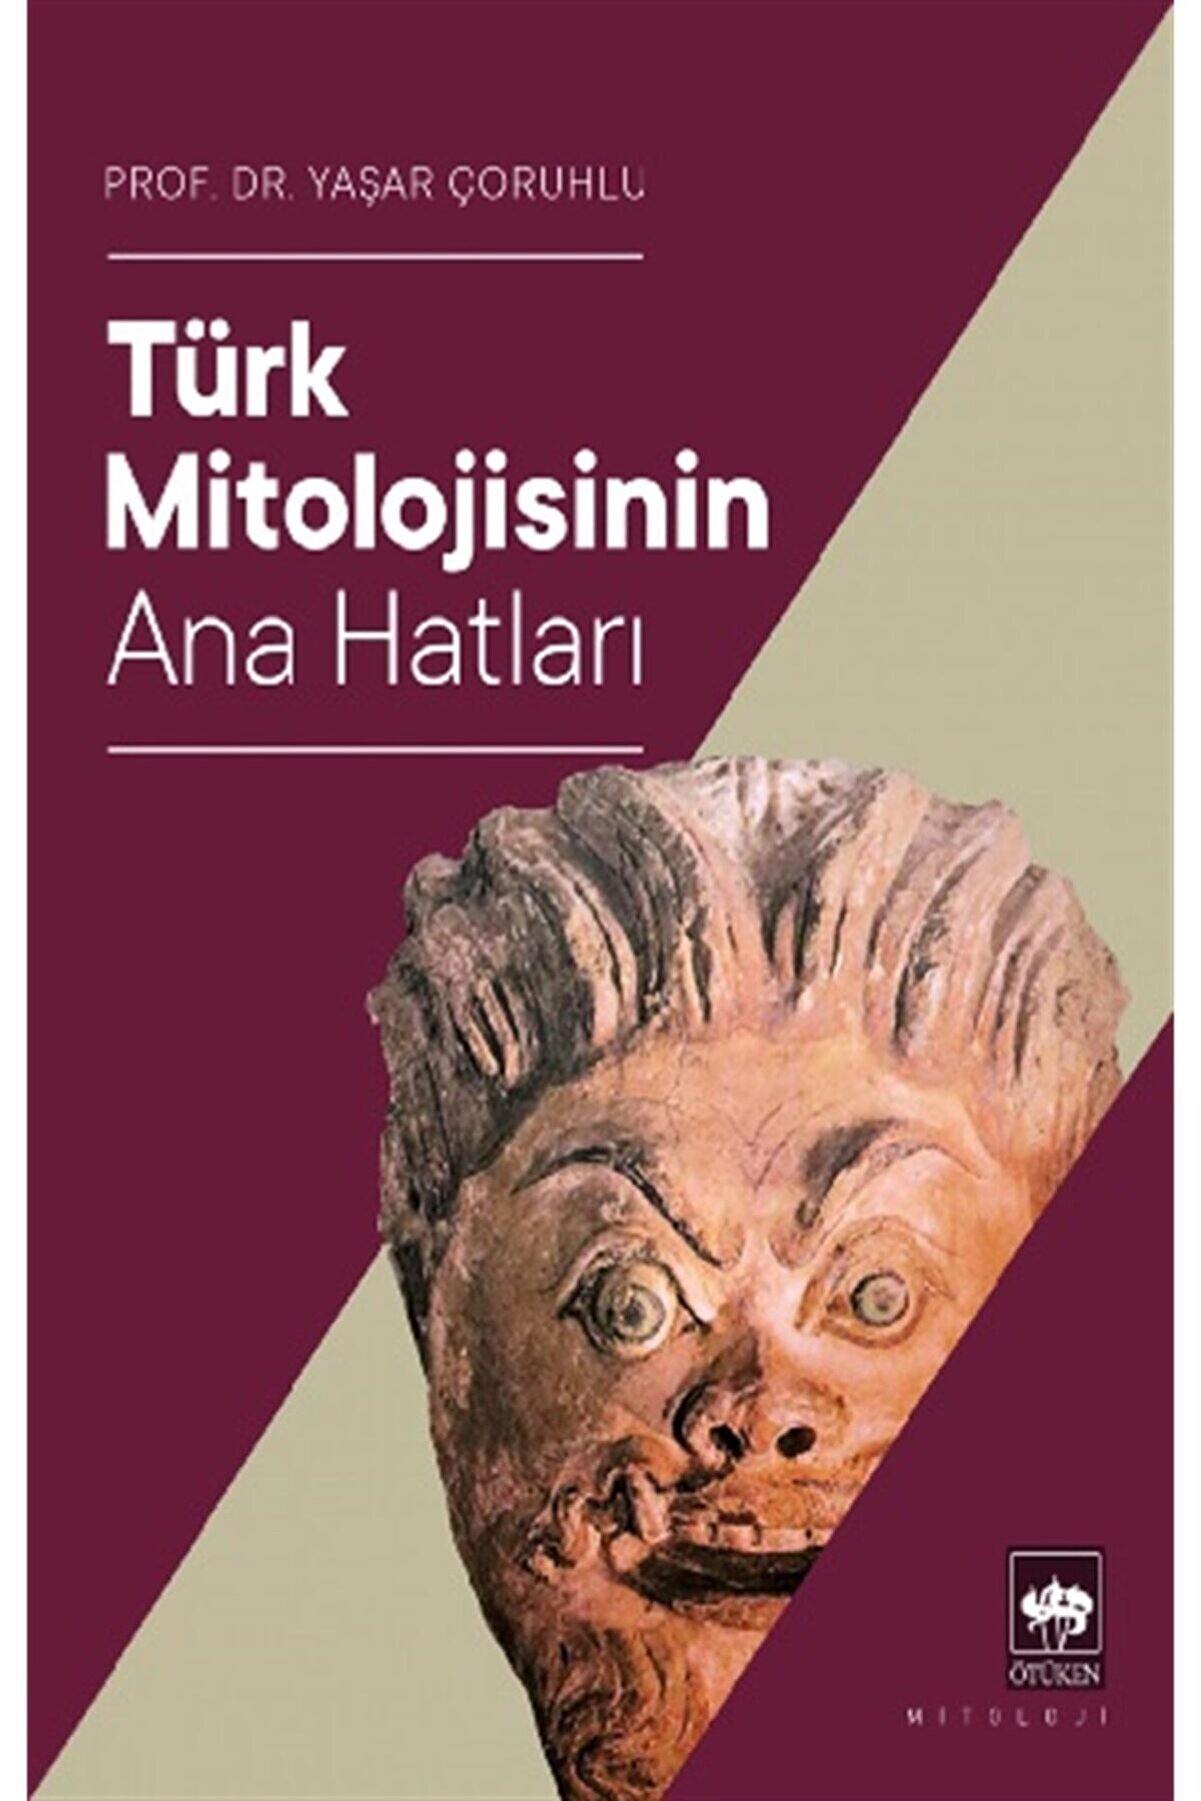 Ötüken Neşriyat Türk Mitolojisinin Ana Hatları